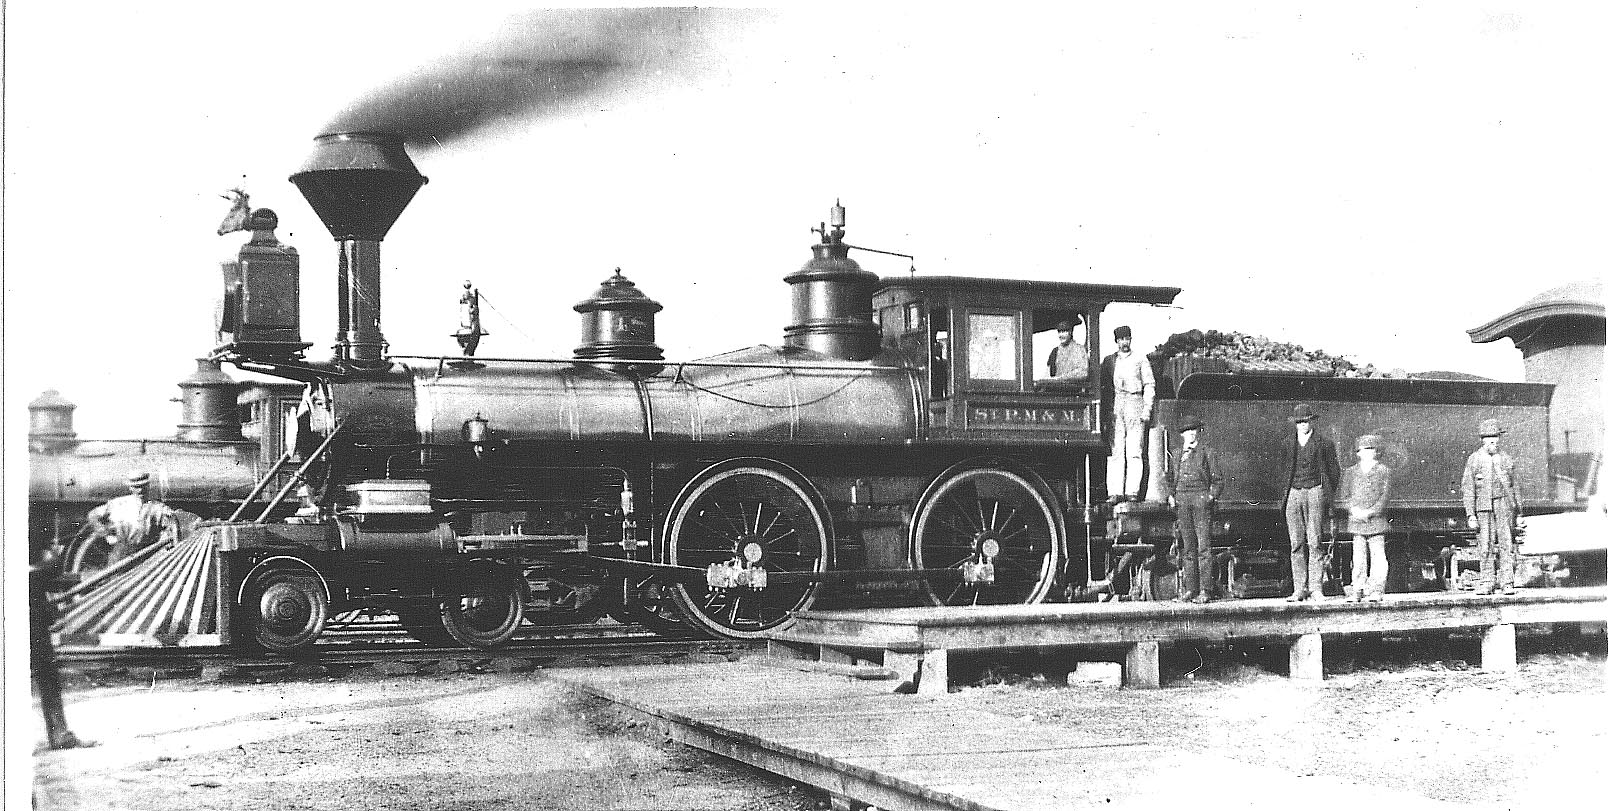 SPM&M locomotive